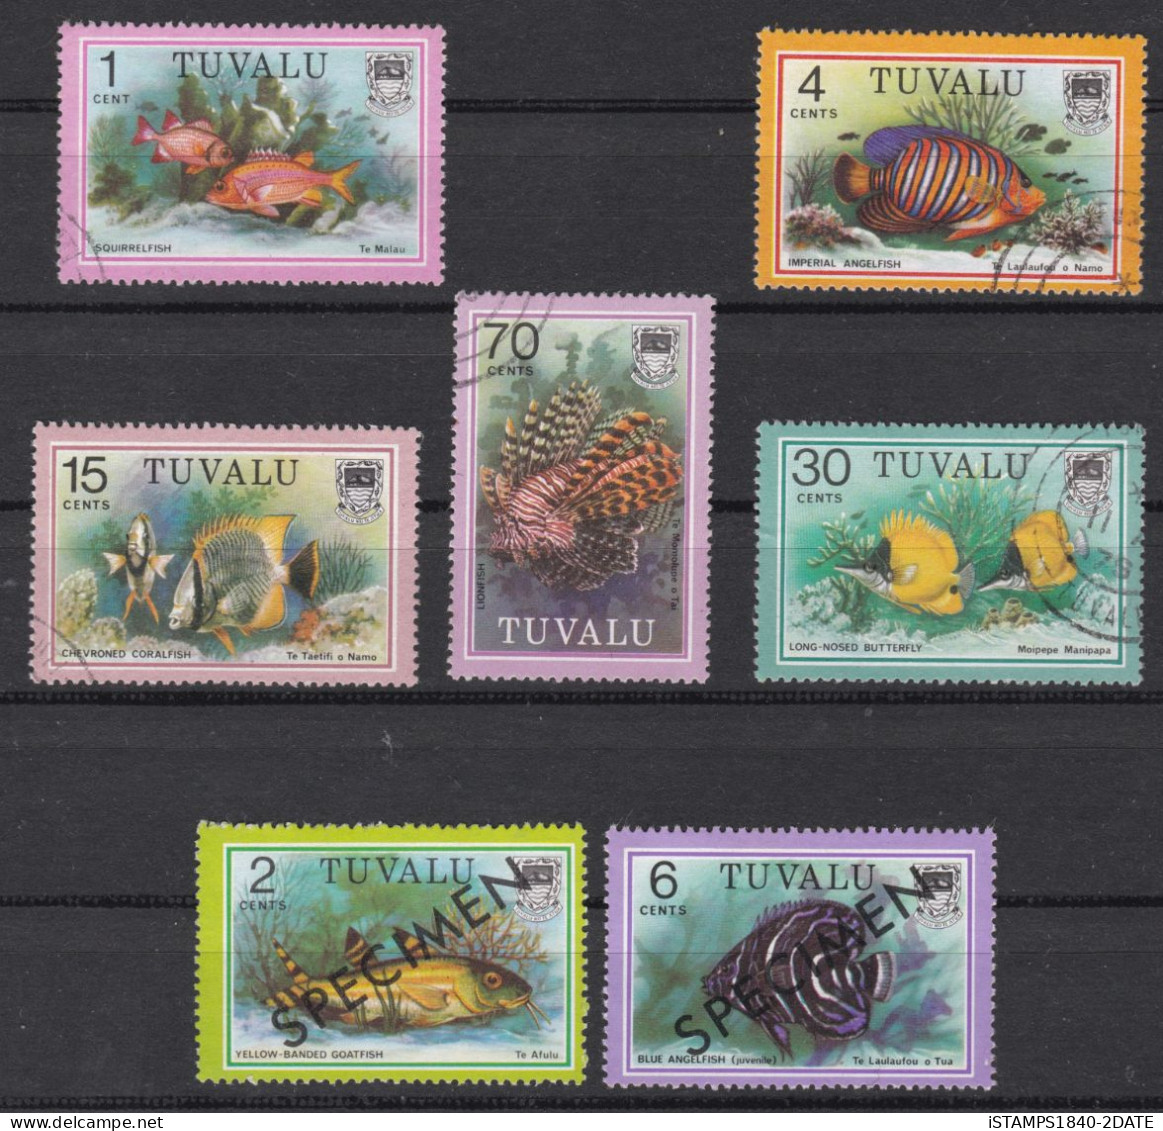 00824/ Tuvalu 1979 Sea Fish Issues Unused + Fine Used - Tuvalu